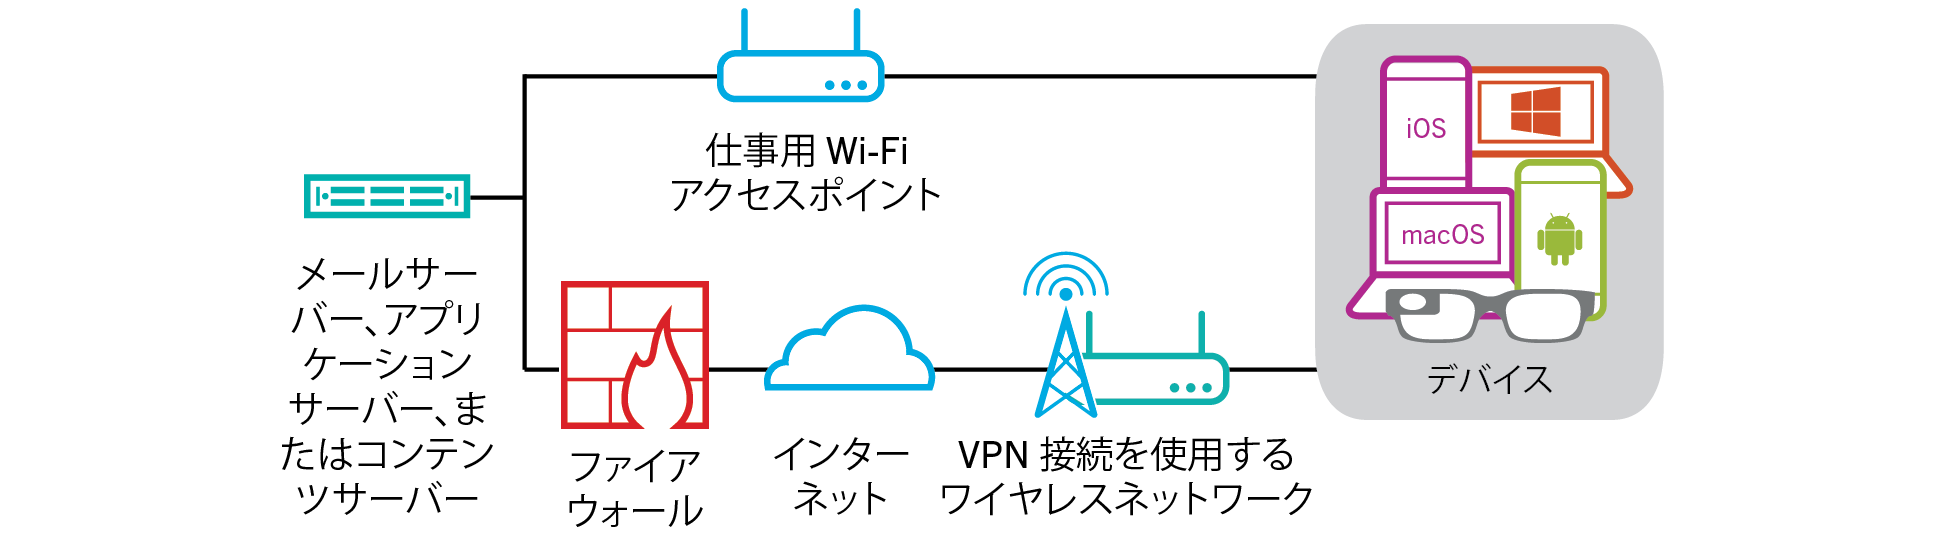 デバイスが組織の VPN または仕事用 Wi-Fi ネットワークを使用して組織のリソースに接続している場合に、データがどのように転送されるかを示す図。